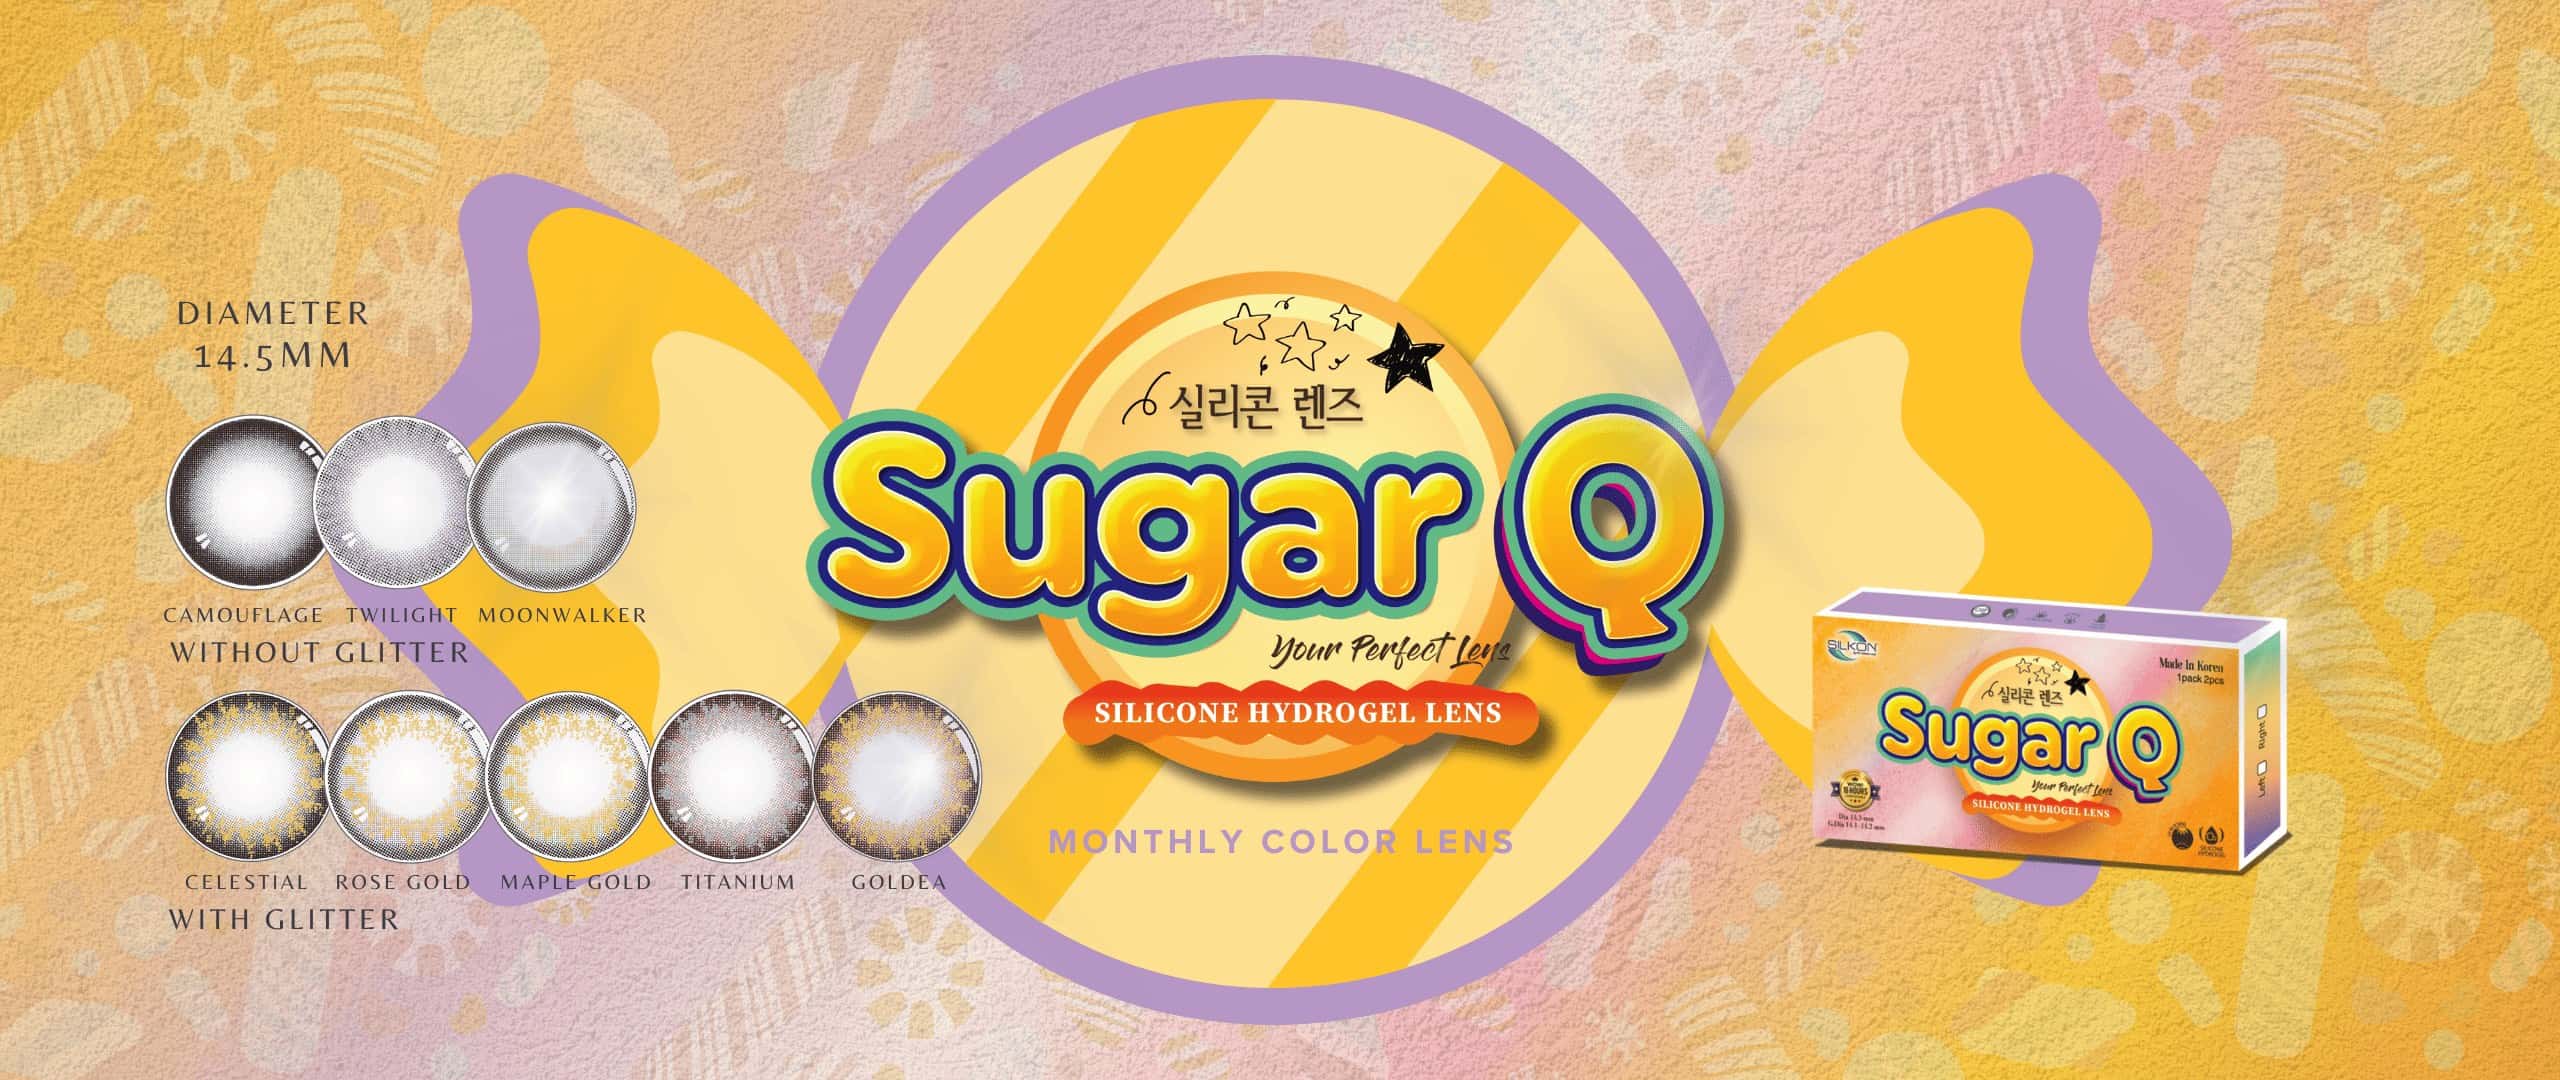 Sugar-Q-home-banner-1